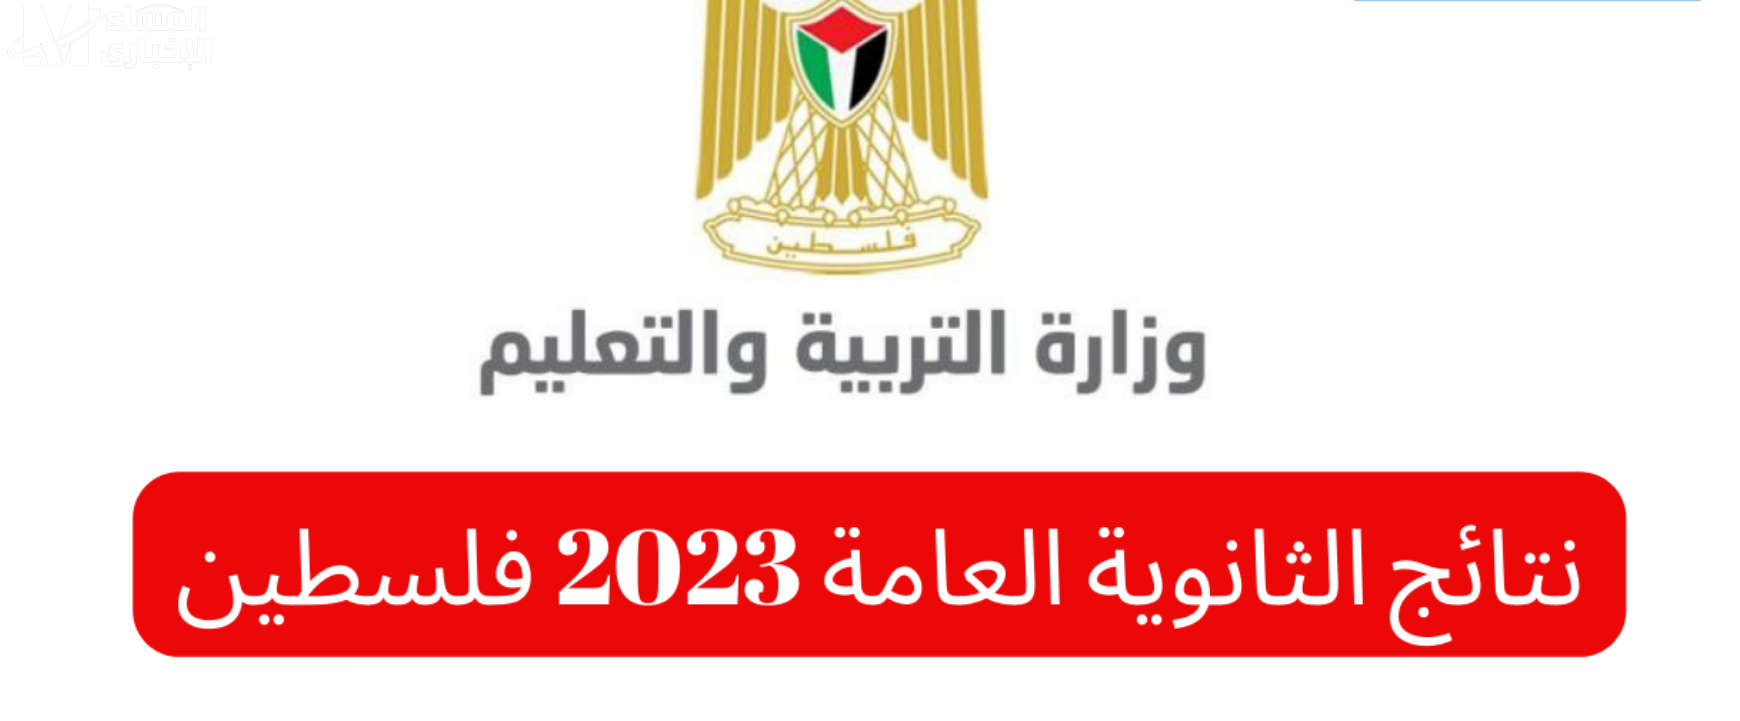 نتائج الثانوية العامة فلسطين 2023